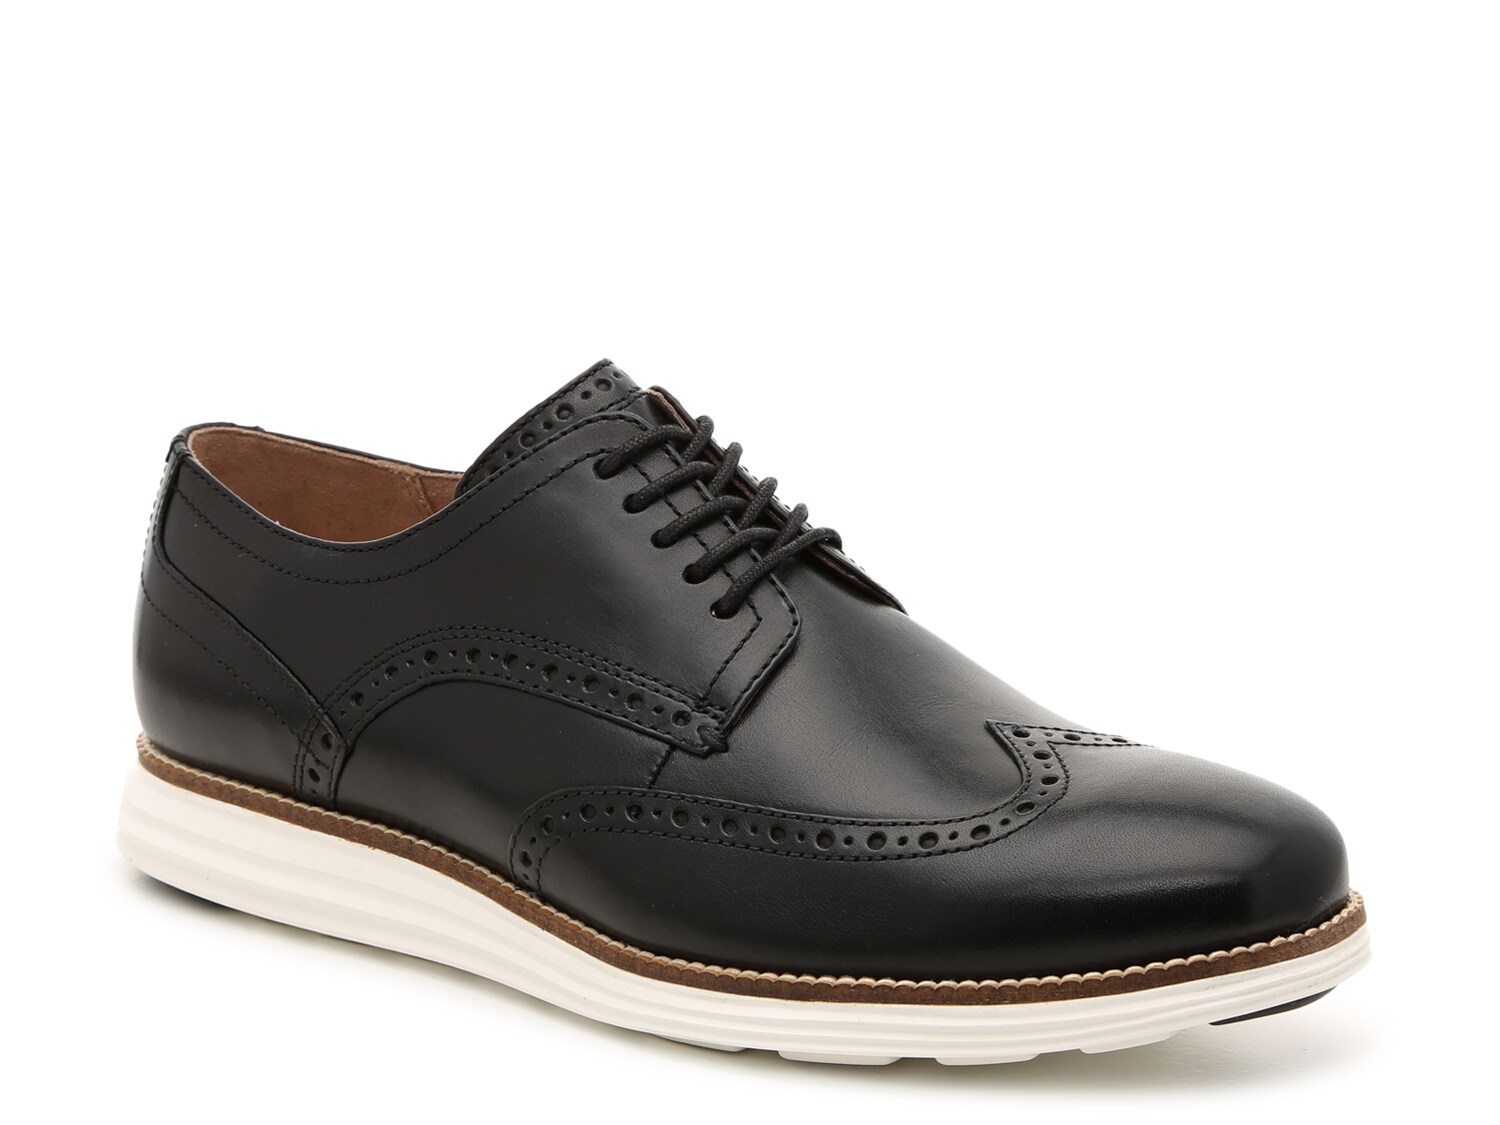 Оксфорды Cole Haan Original Grand, черный мужские кожаные туфли на толстой подошве коричневые классические туфли оксфорды броги на платформе на осень 2021